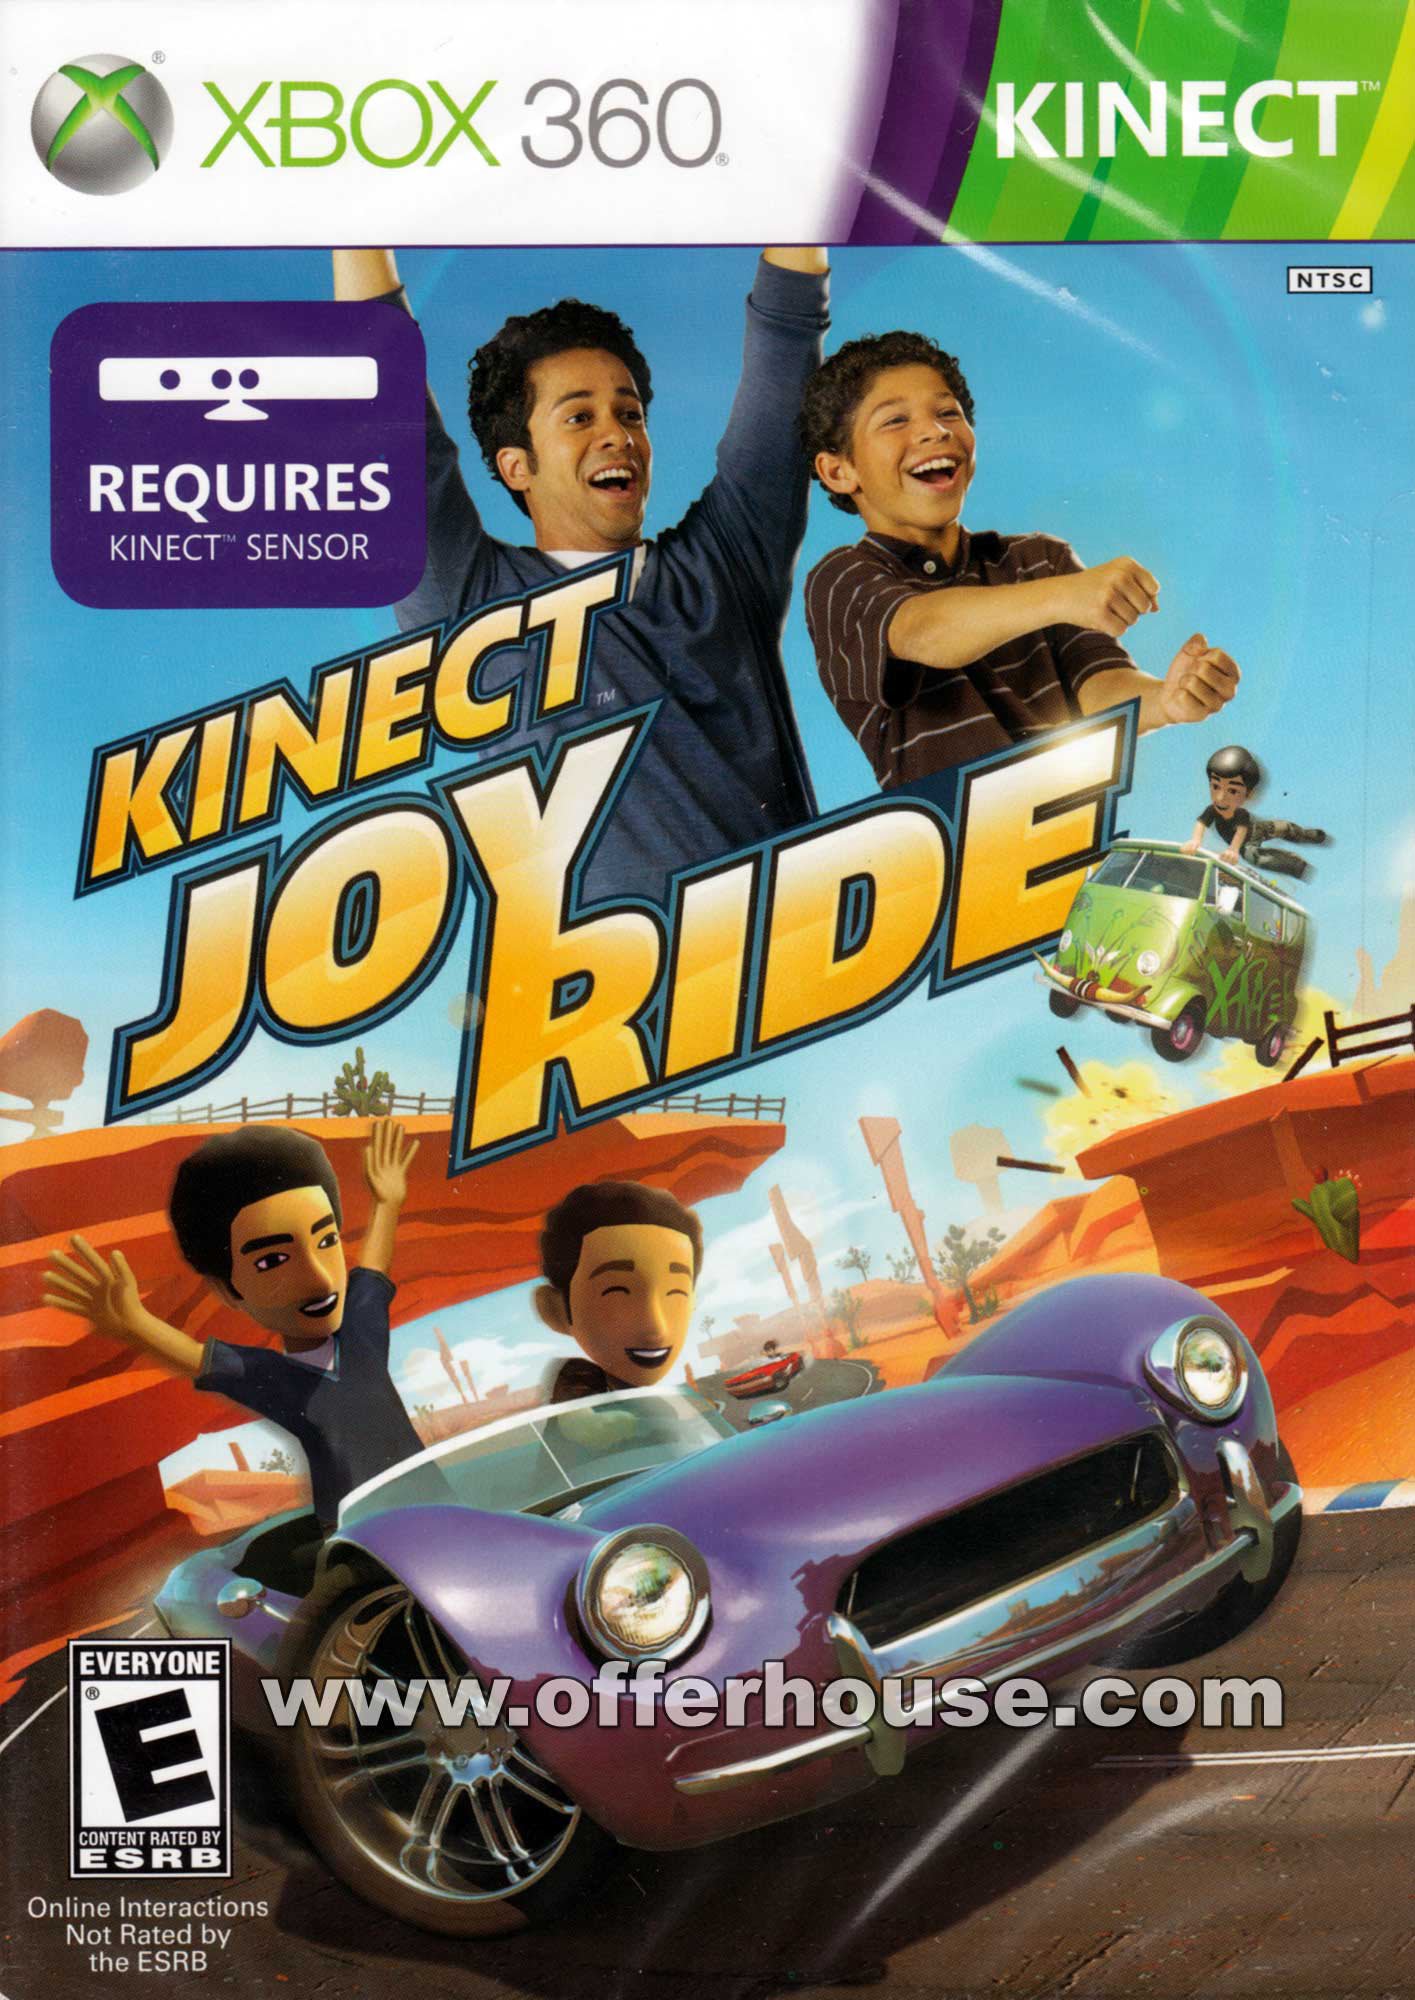 Image of Kinect Joy Ride